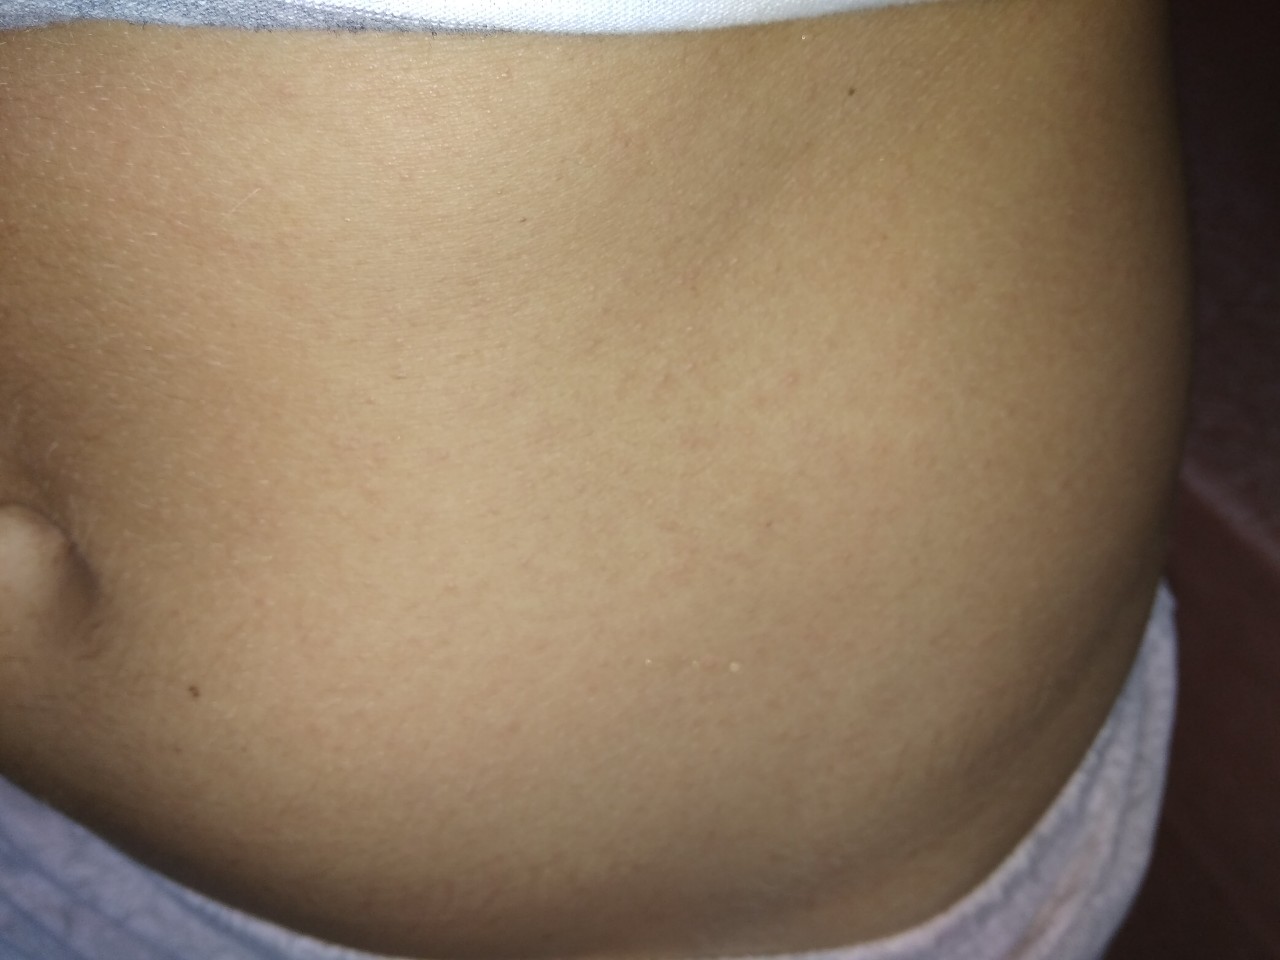 красная сыпь на груди во время беременности фото 114